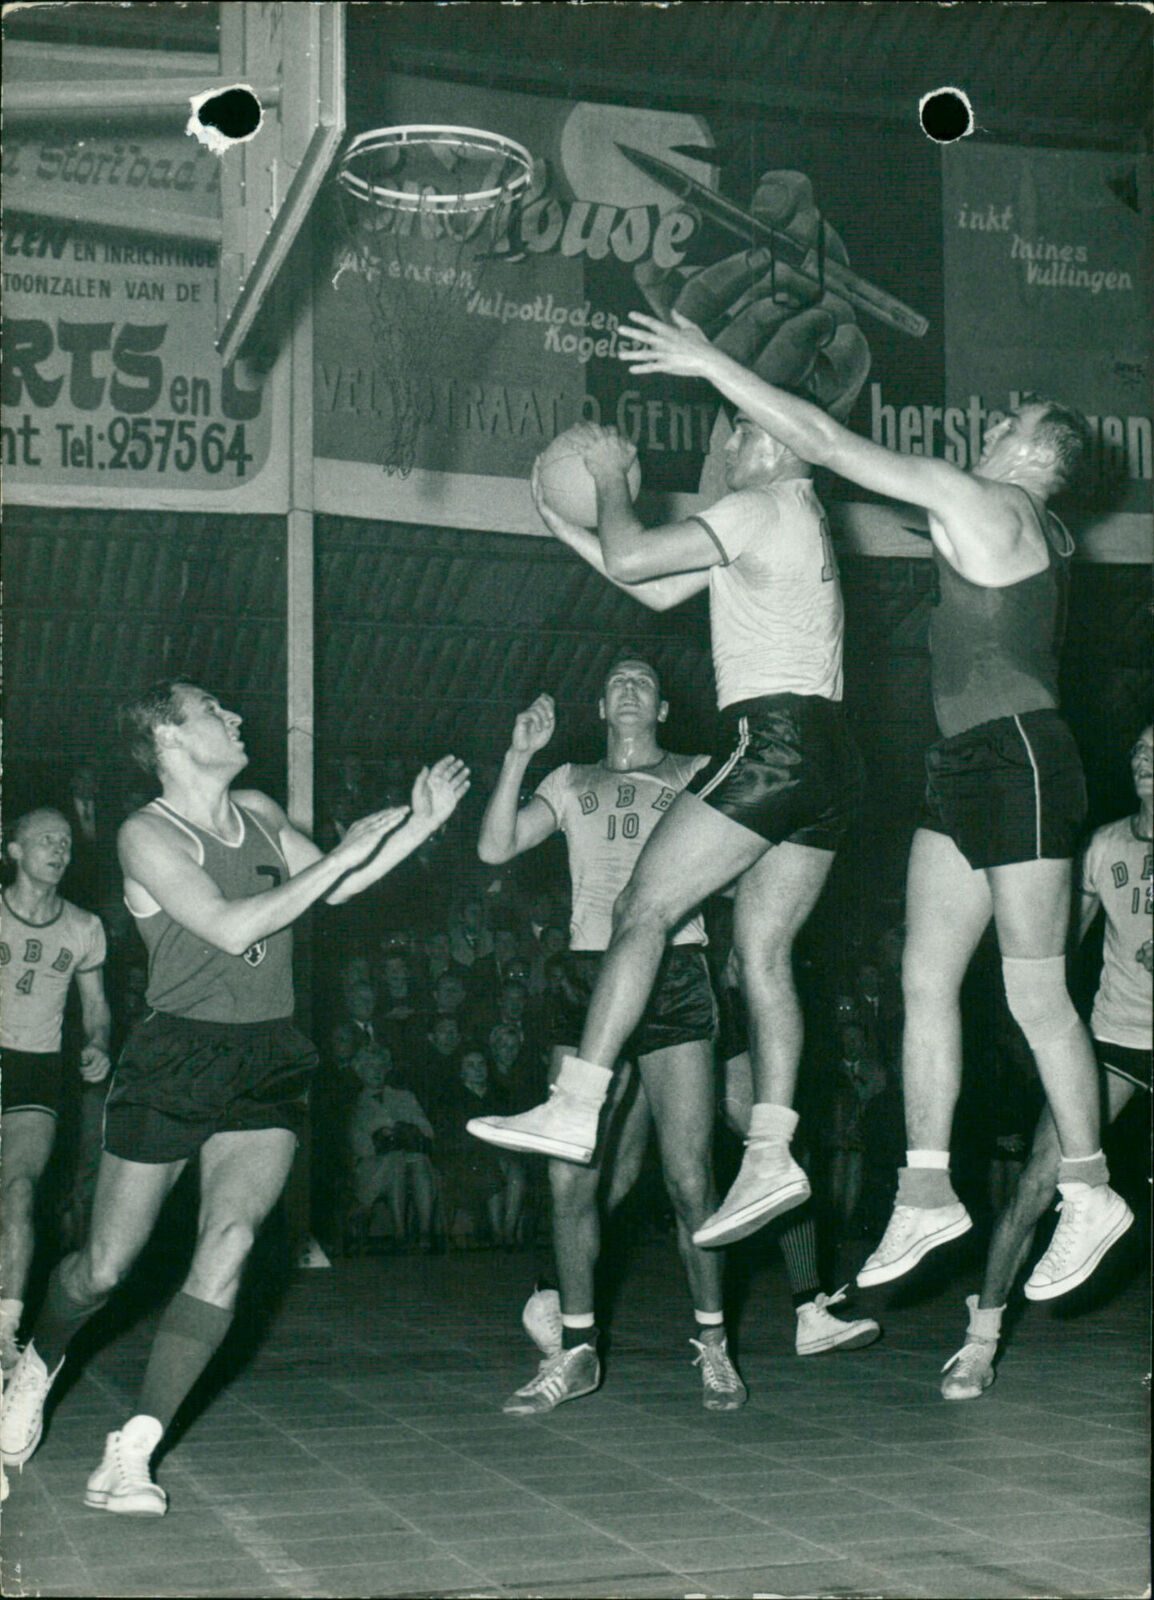 IND ATTACK MATCH BASKETBALL NATIONAL BELGIAN EV... - Vintage Photograph 4239166